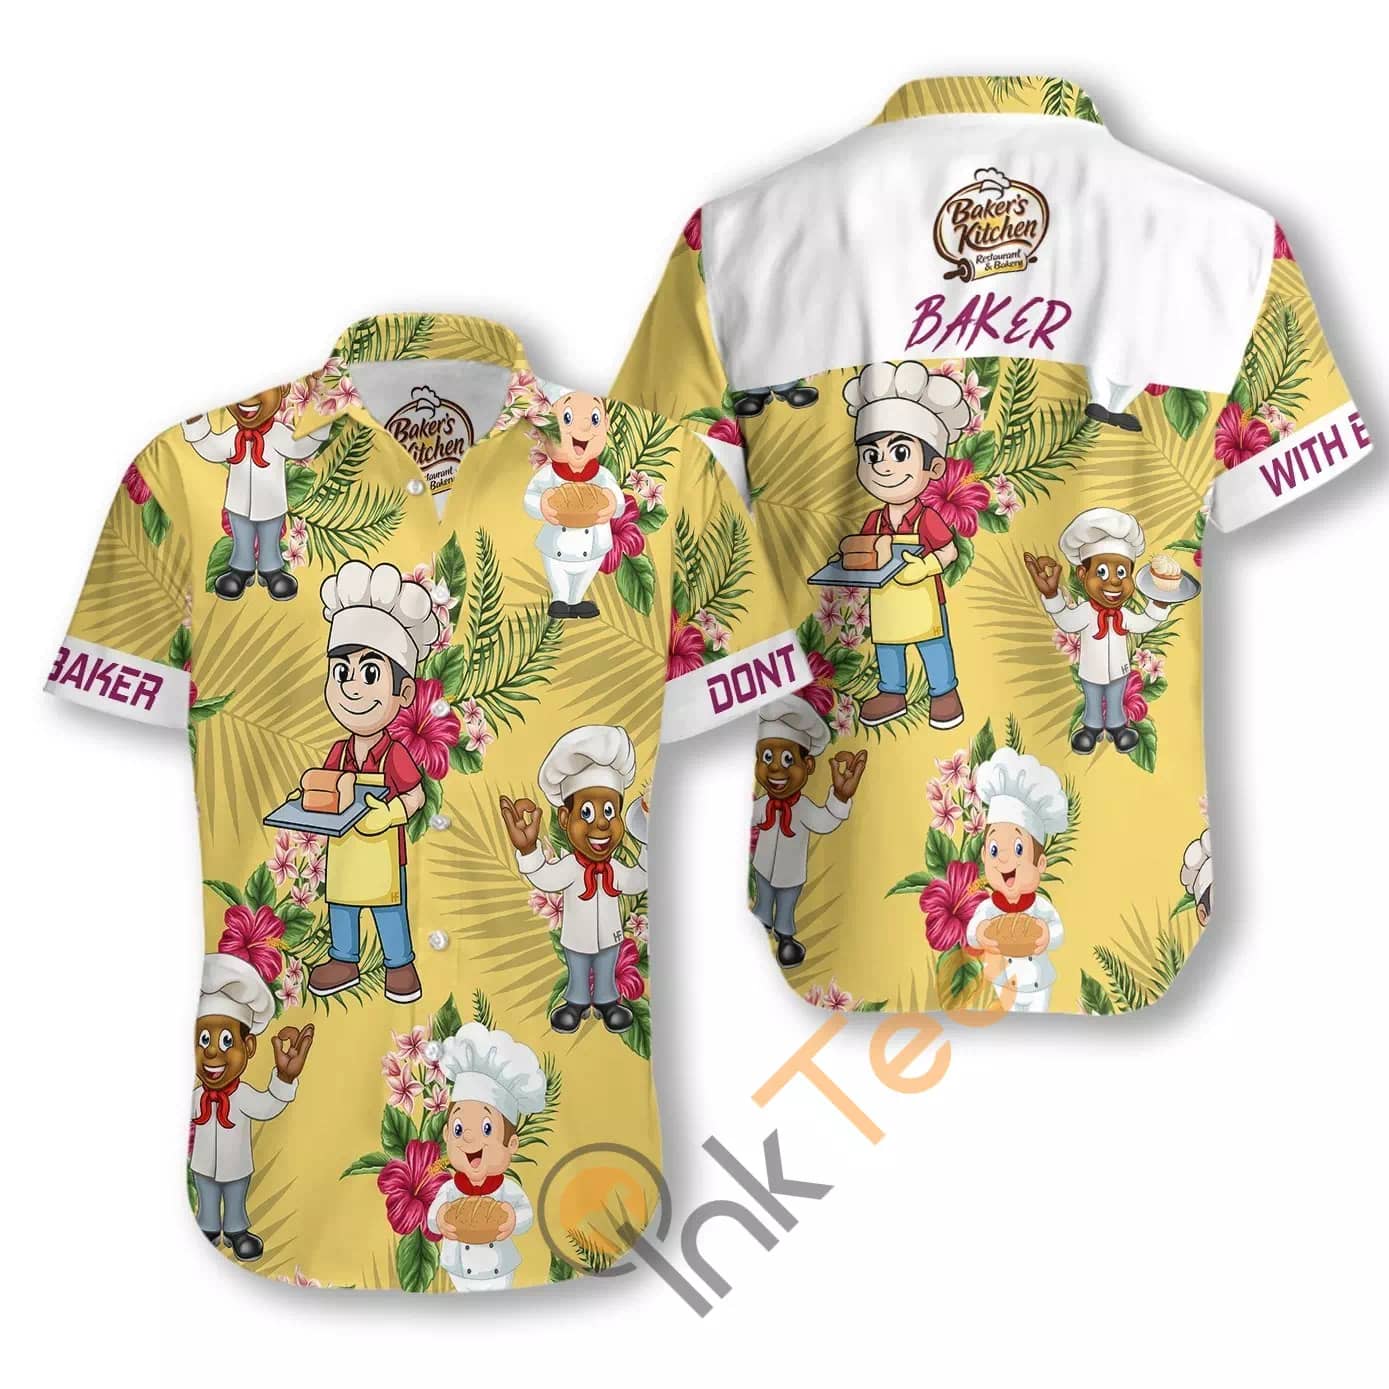 Don't Mess With Baker N564 Hawaiian shirts